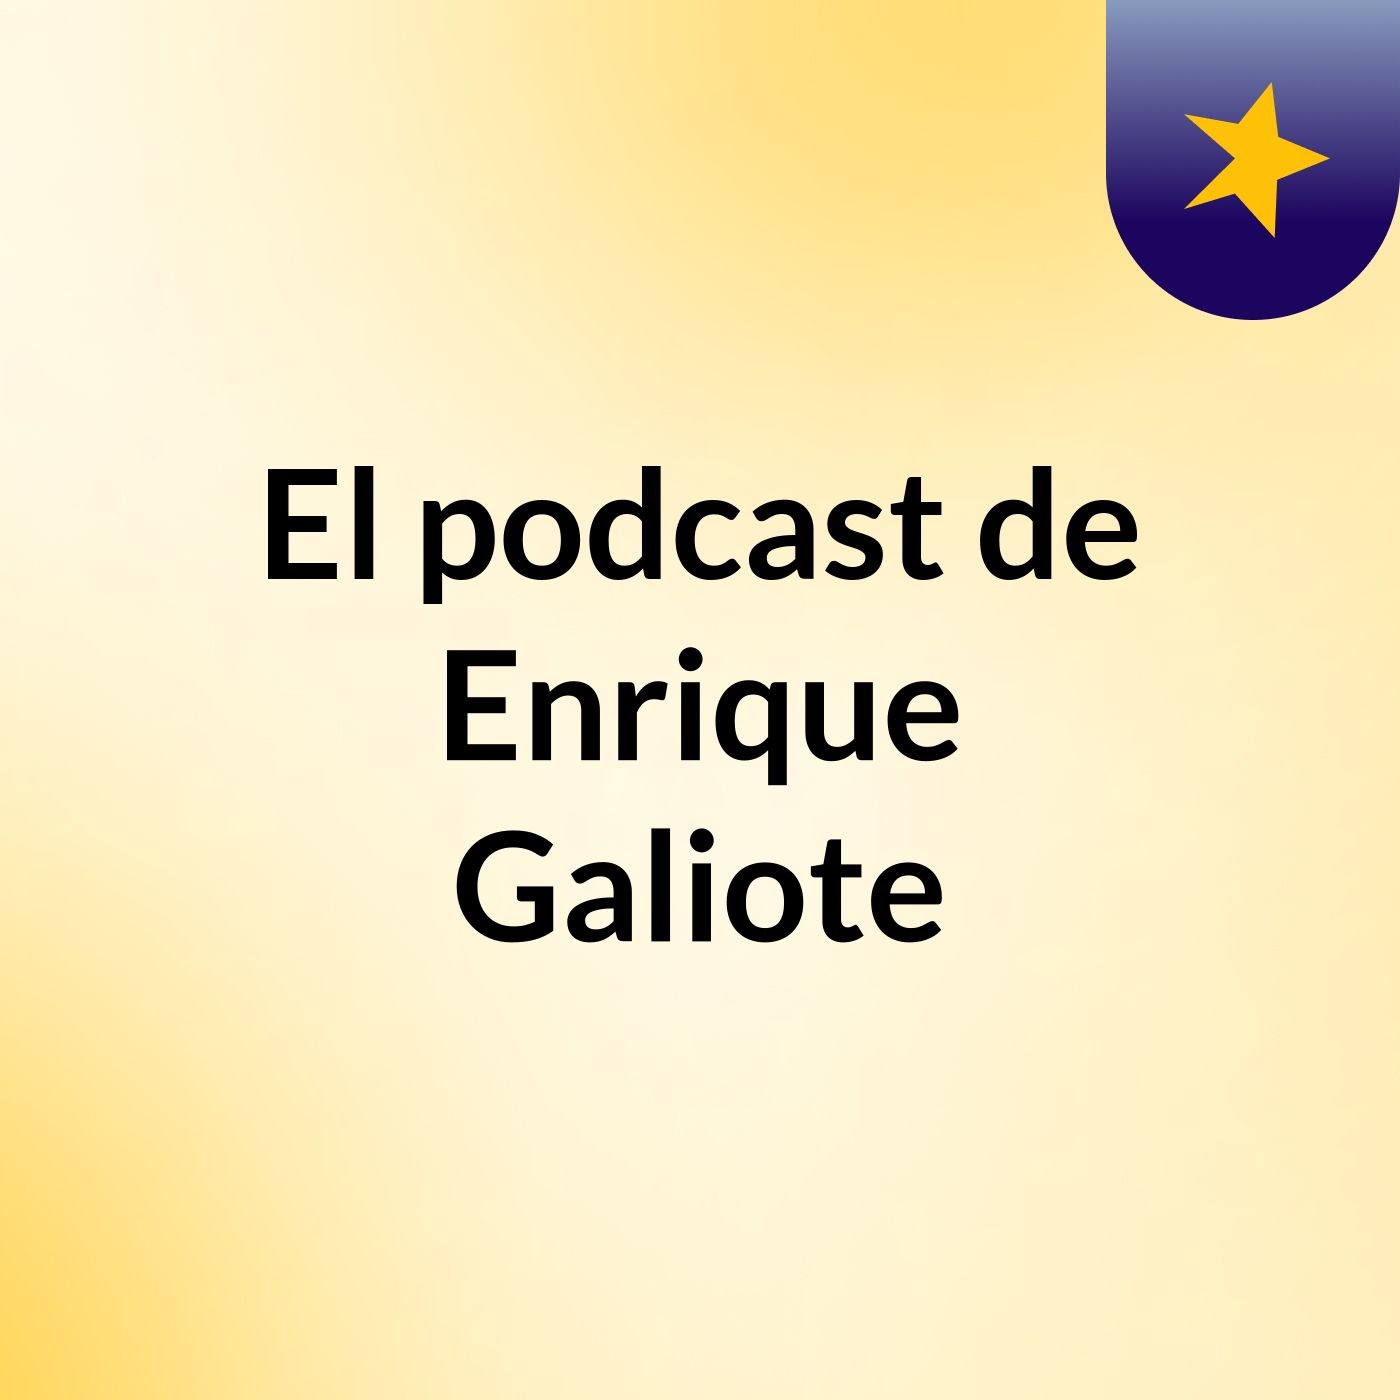 El podcast de Enrique Galiote